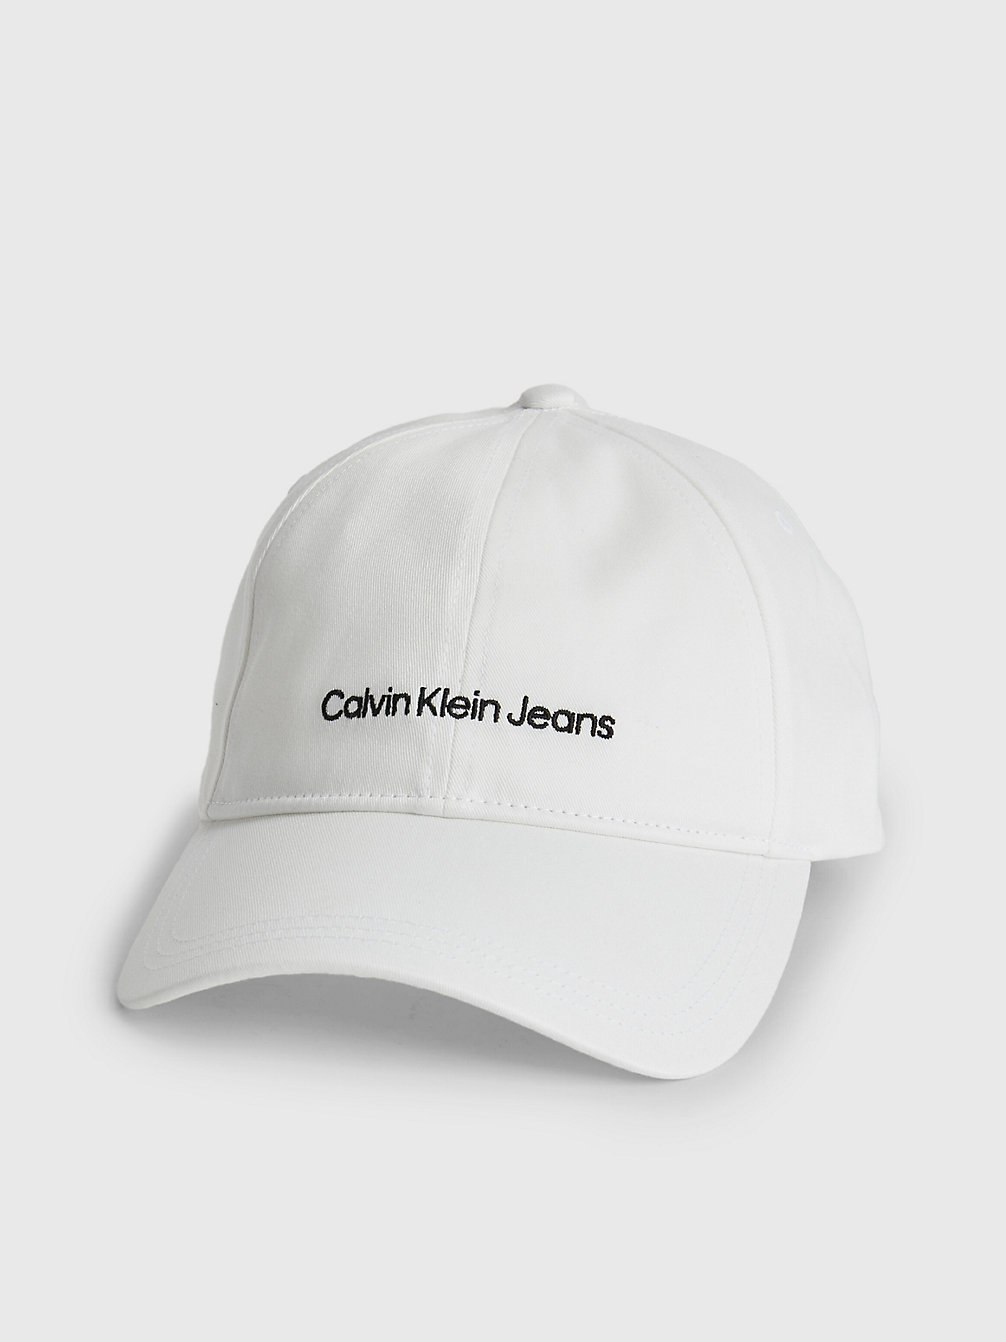 BRIGHT WHITE > Pet Van Biologisch Katoen > undefined heren - Calvin Klein